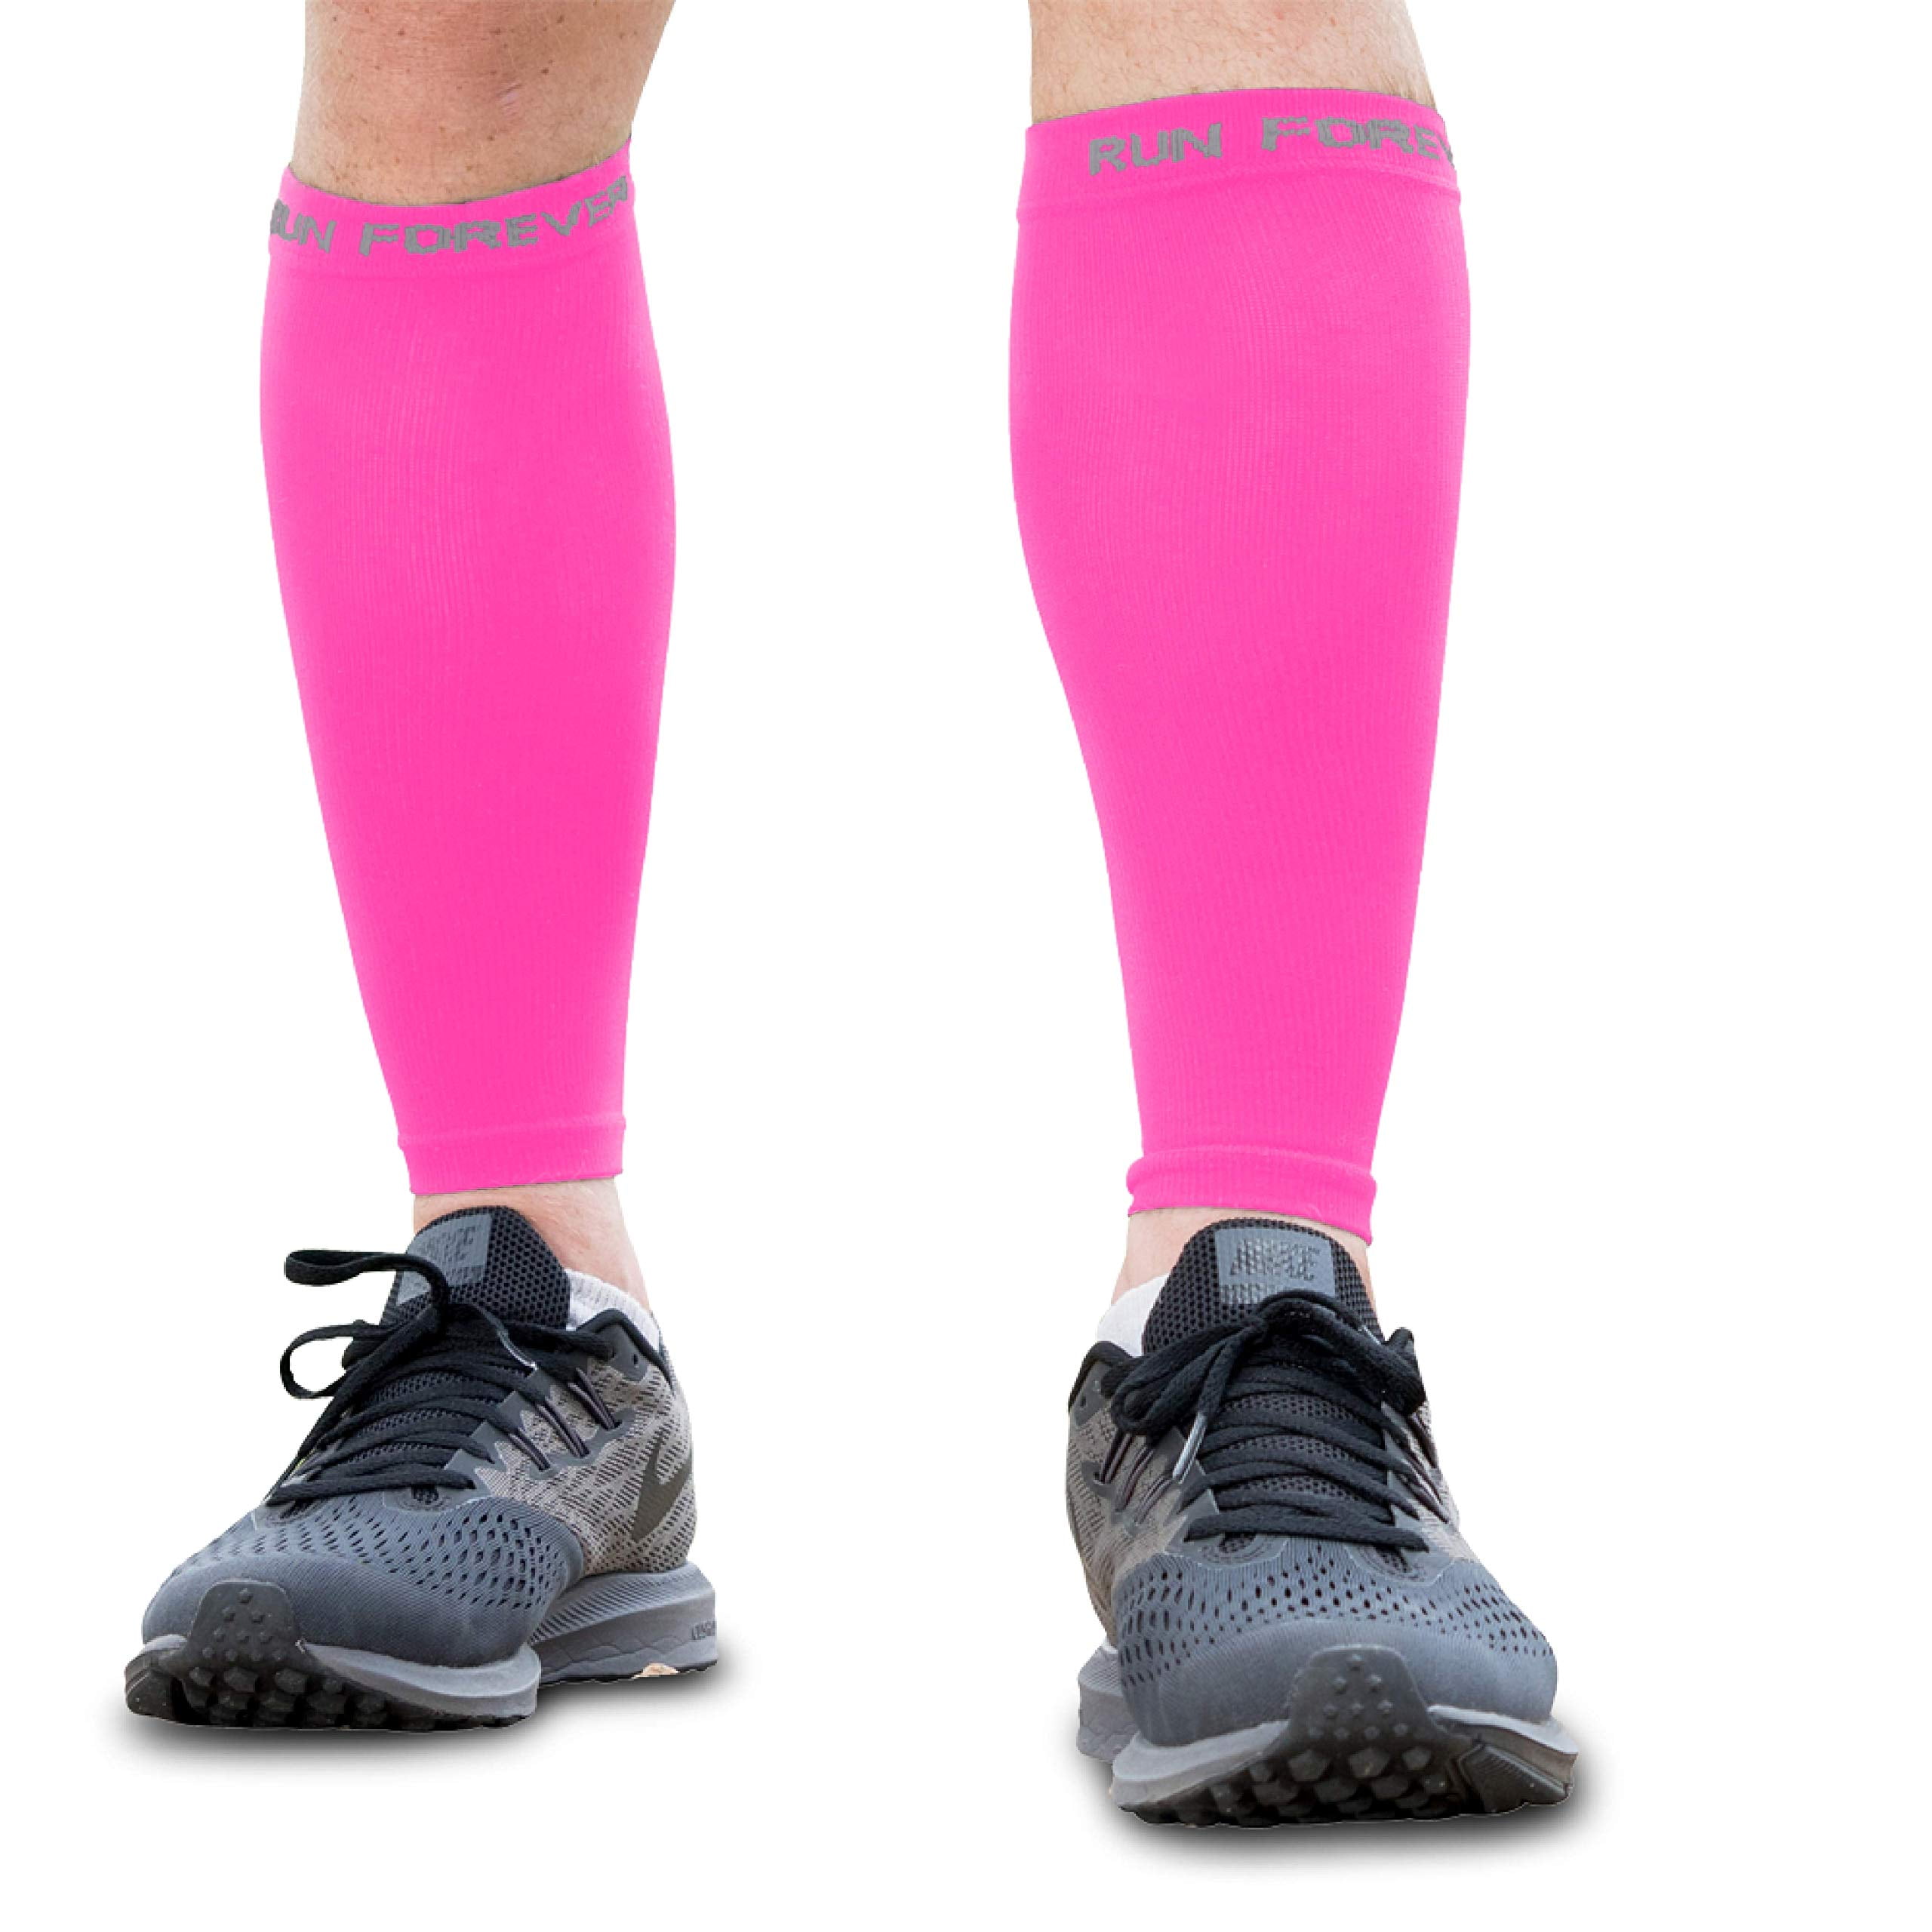 Vært for Jeg mistede min vej syg Run Forever Sports Calf Compression Sleeves Pink, Size X-Large - Walmart.com